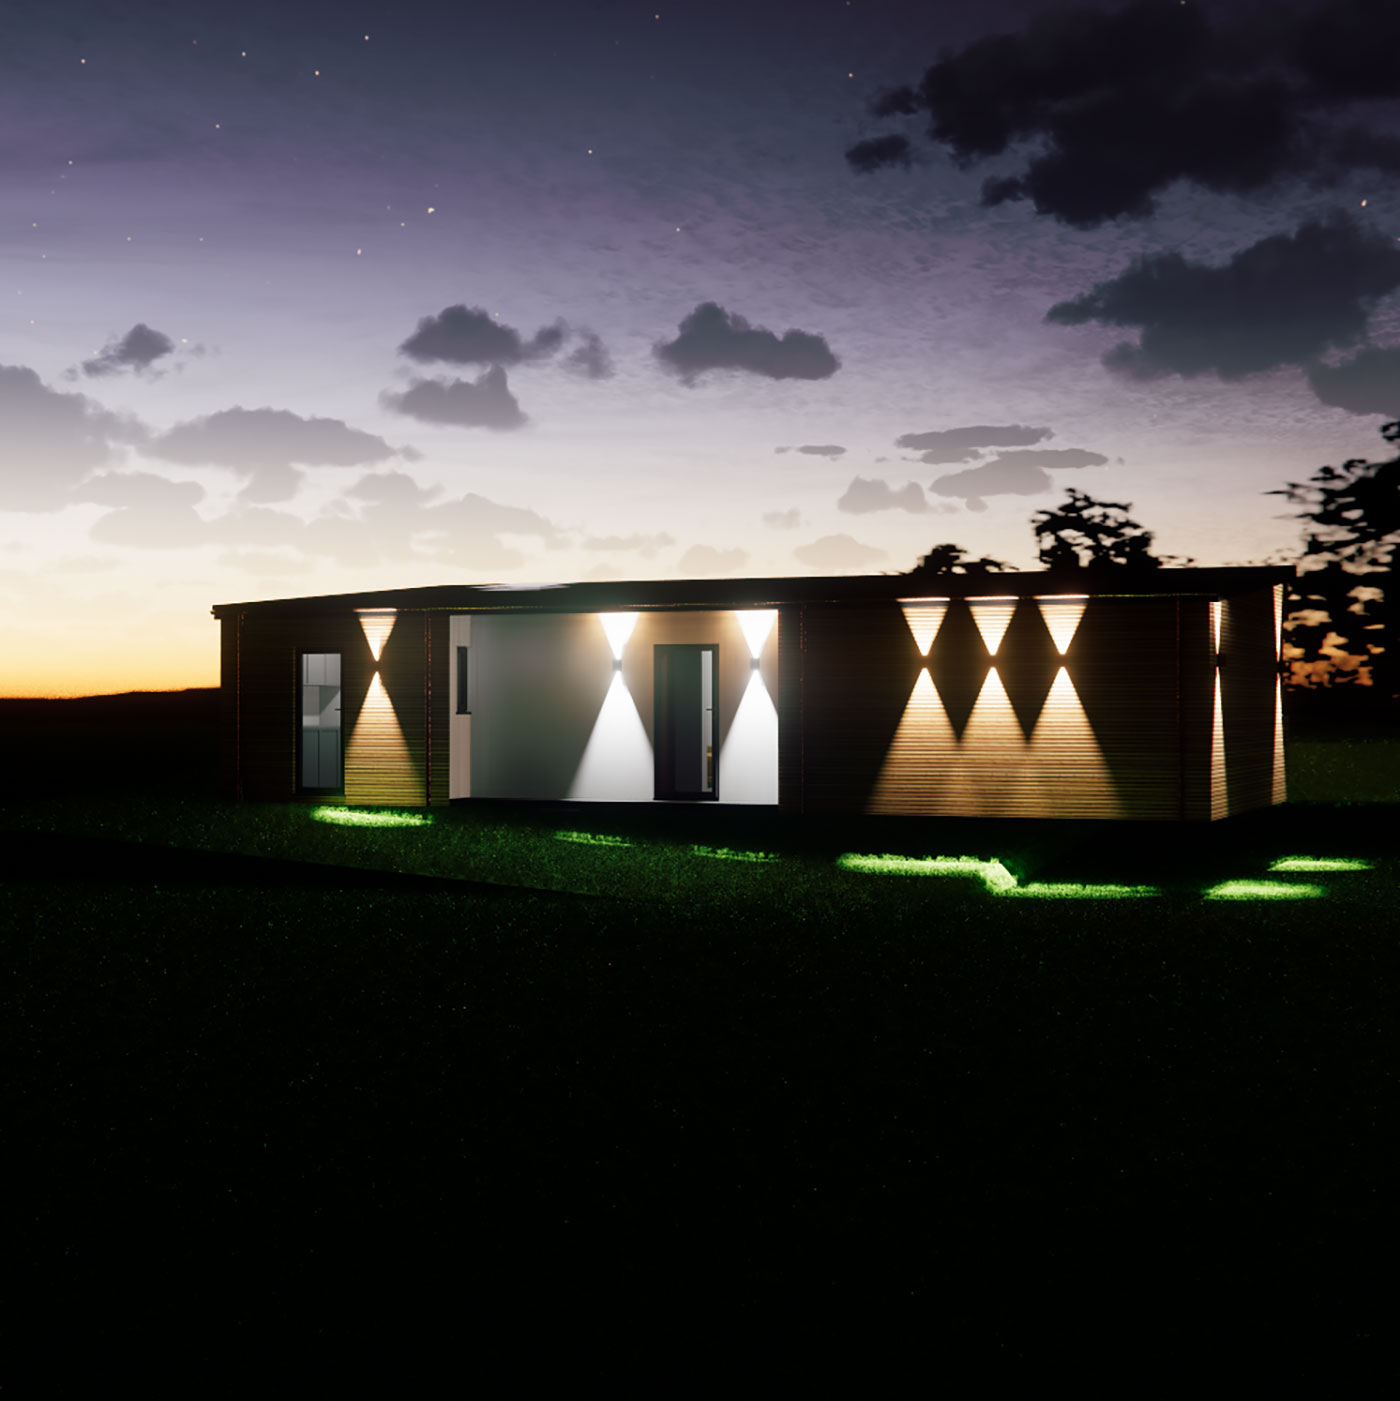 Designer garden annexe visualisation at night